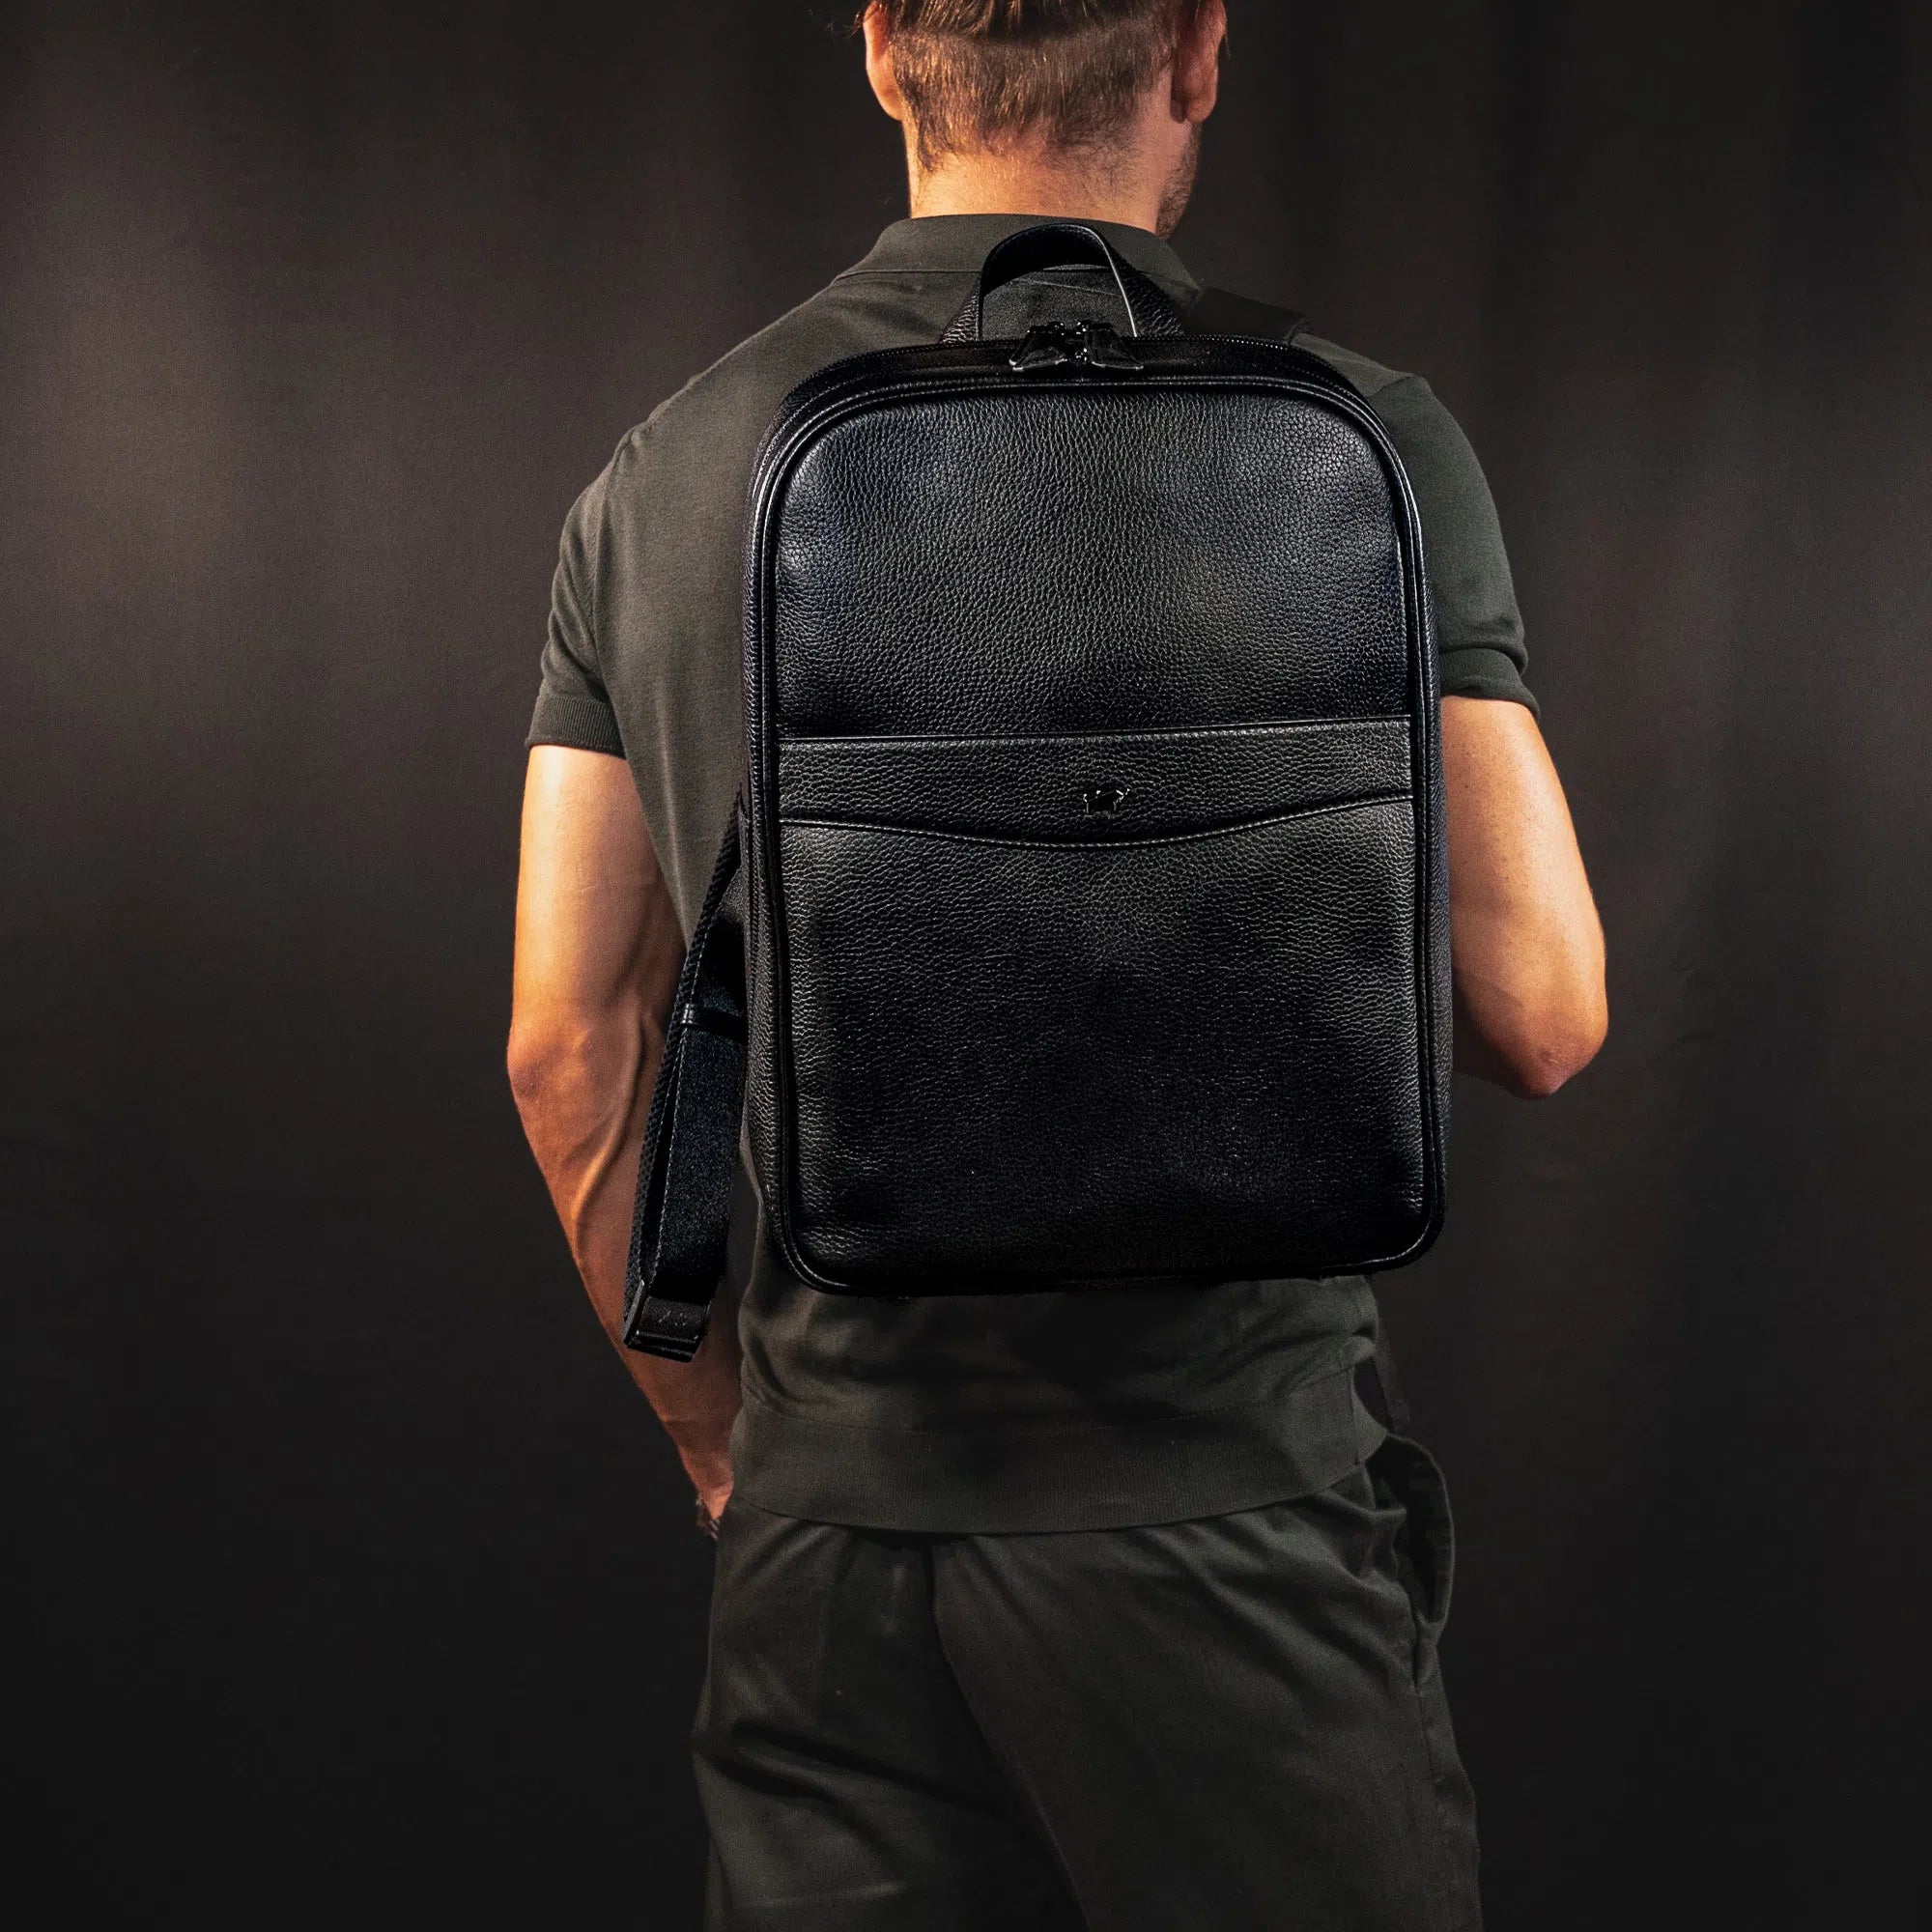 schwarzer Lederrucksack auf dem Rücken eines Mannes Keyfeature-1